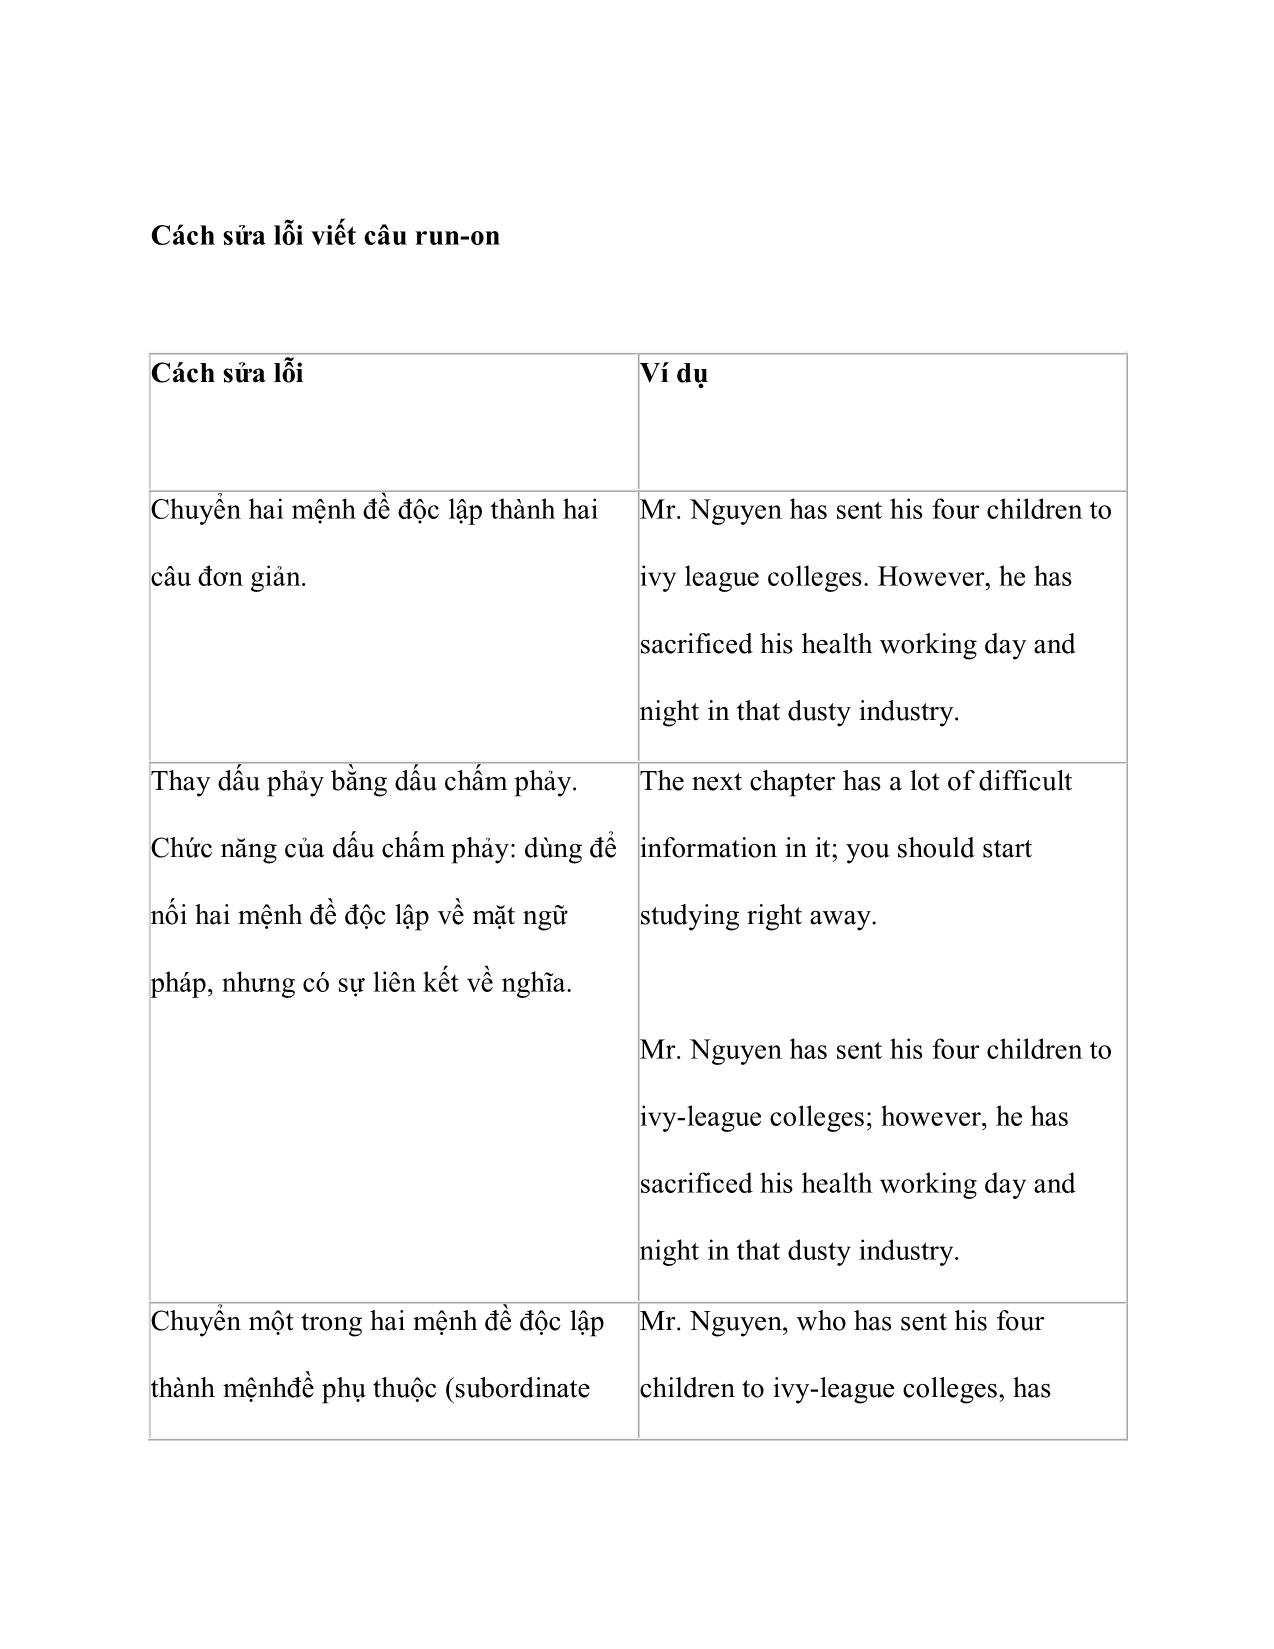 Các lỗi câu cơ bản trong văn viết trang 4